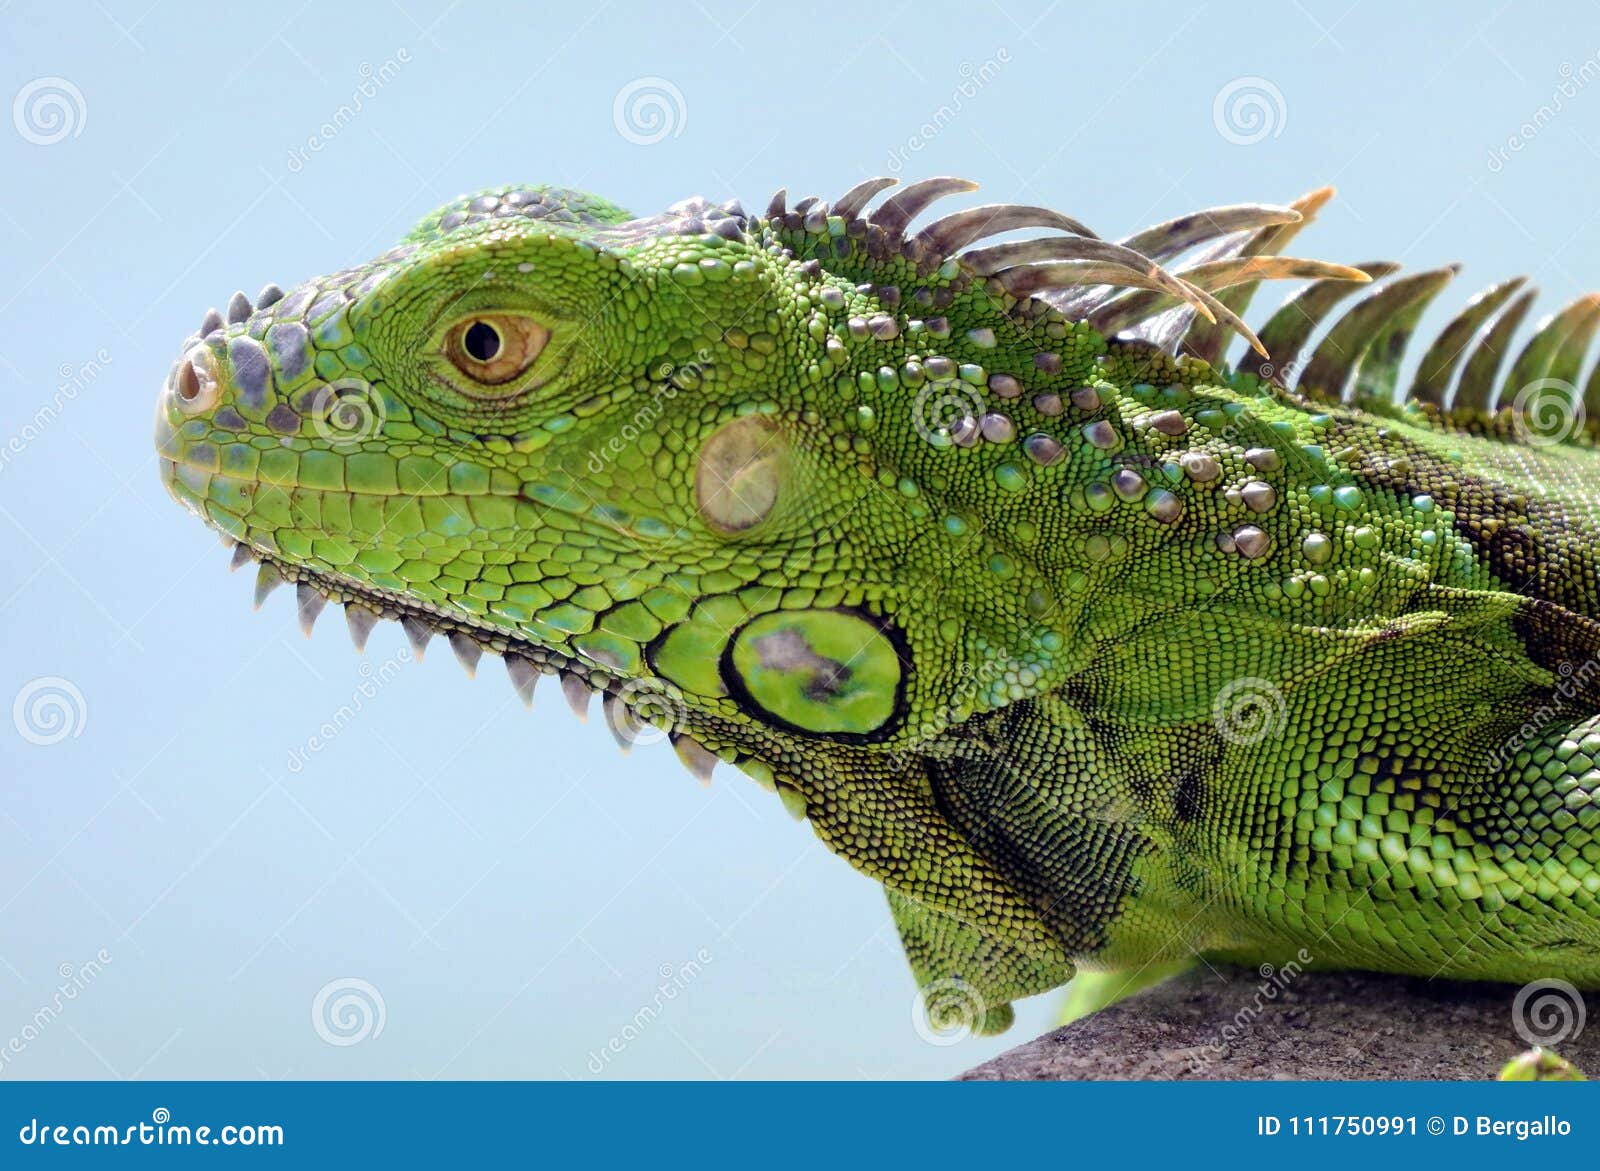 Iguana Pet